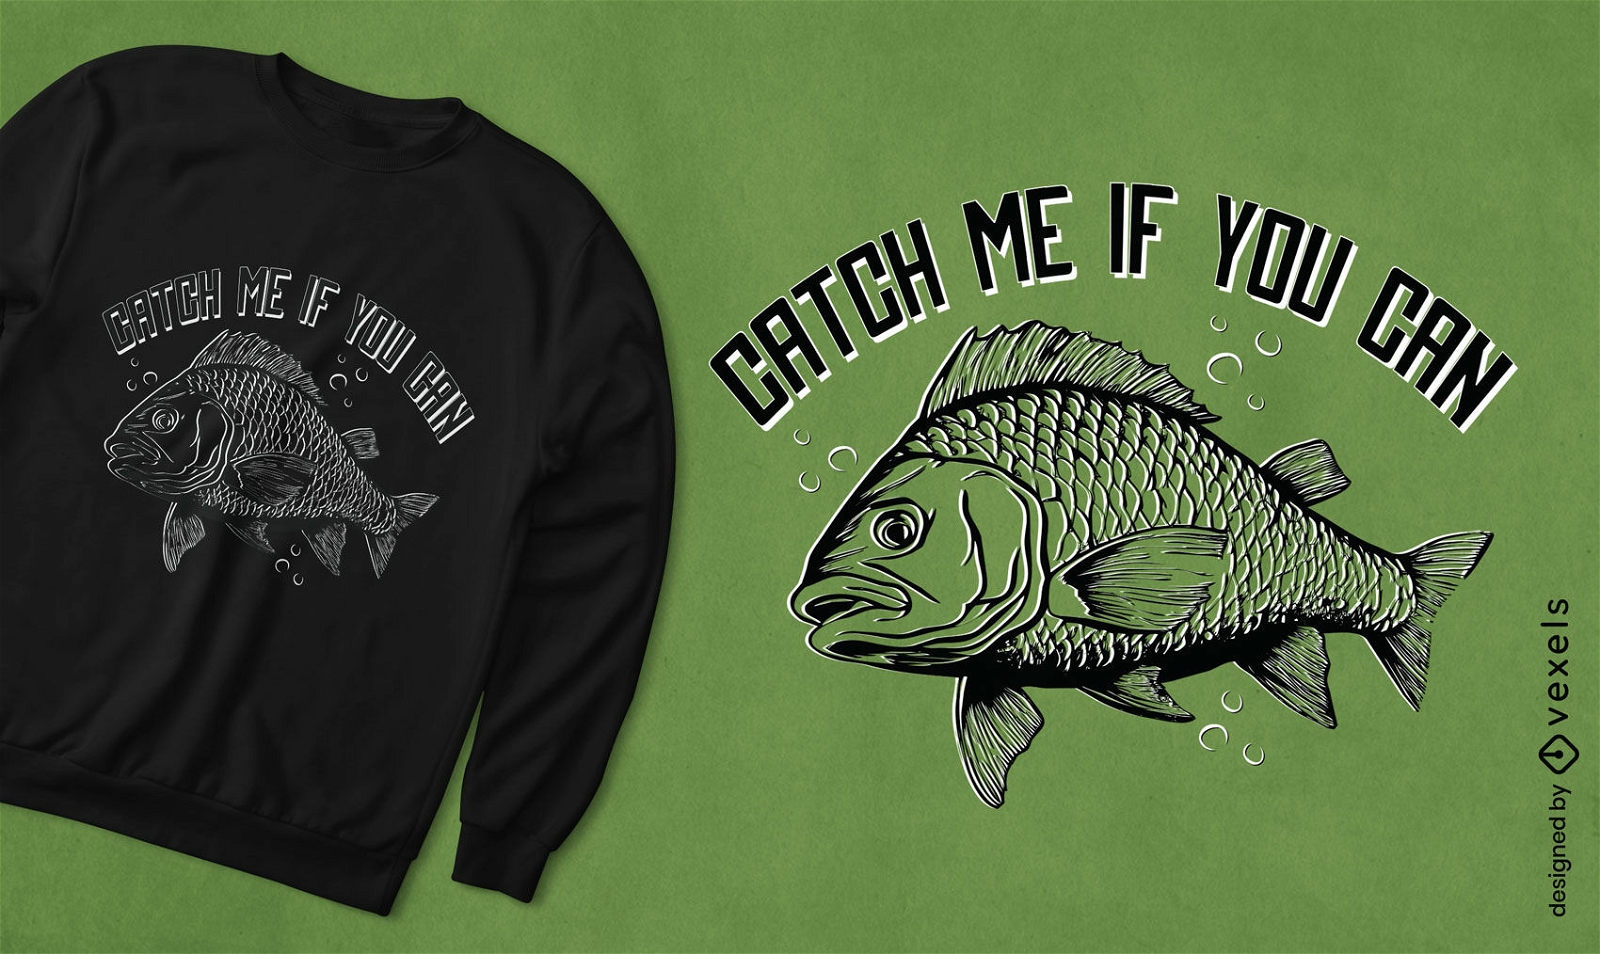 Carp fish quote t-shirt design